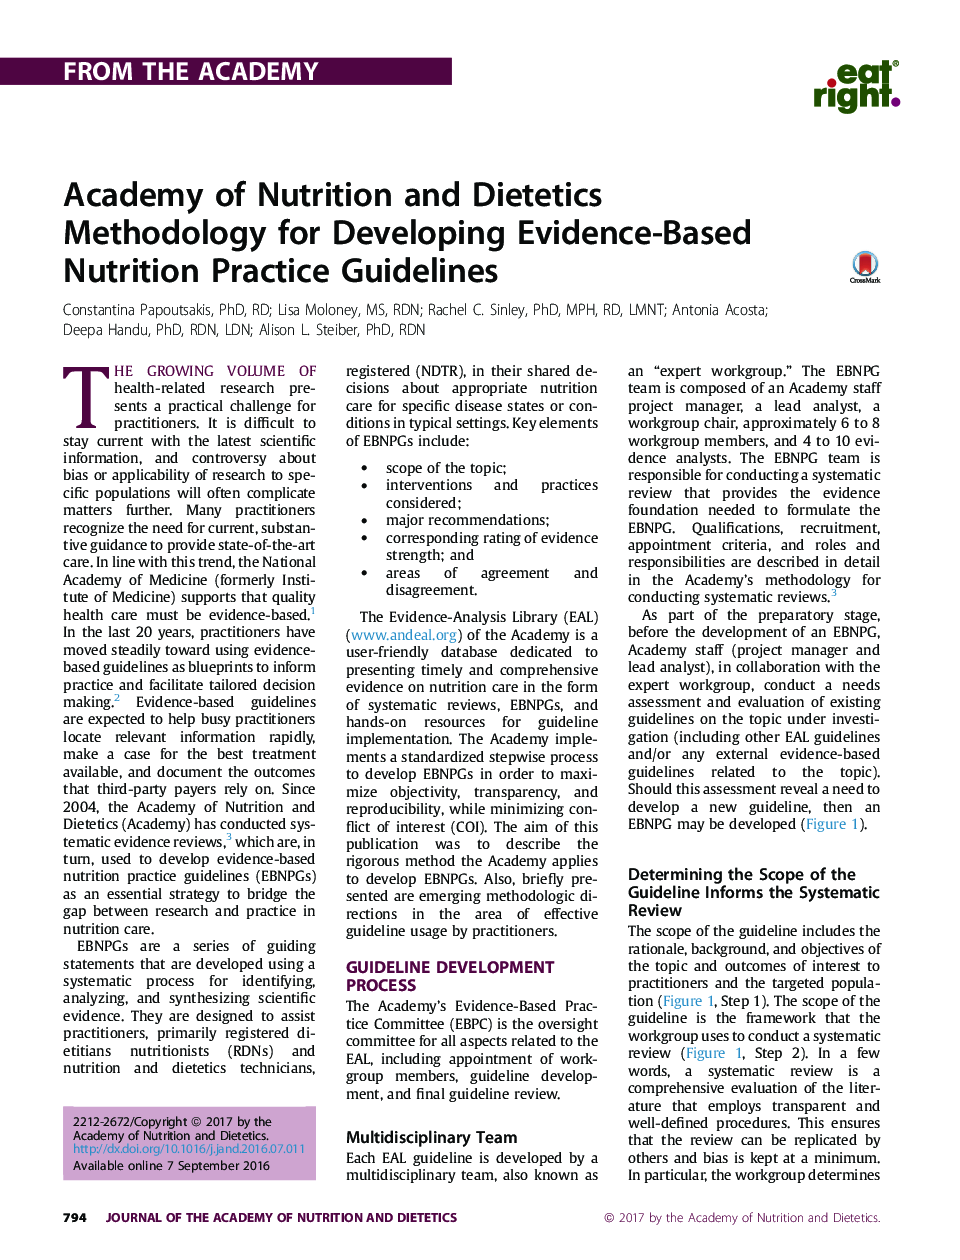 آکادمیک تغذیه و رژیم غذایی روش شناسی برای ایجاد دستورالعمل های تغذیه مبتنی بر شواهد 